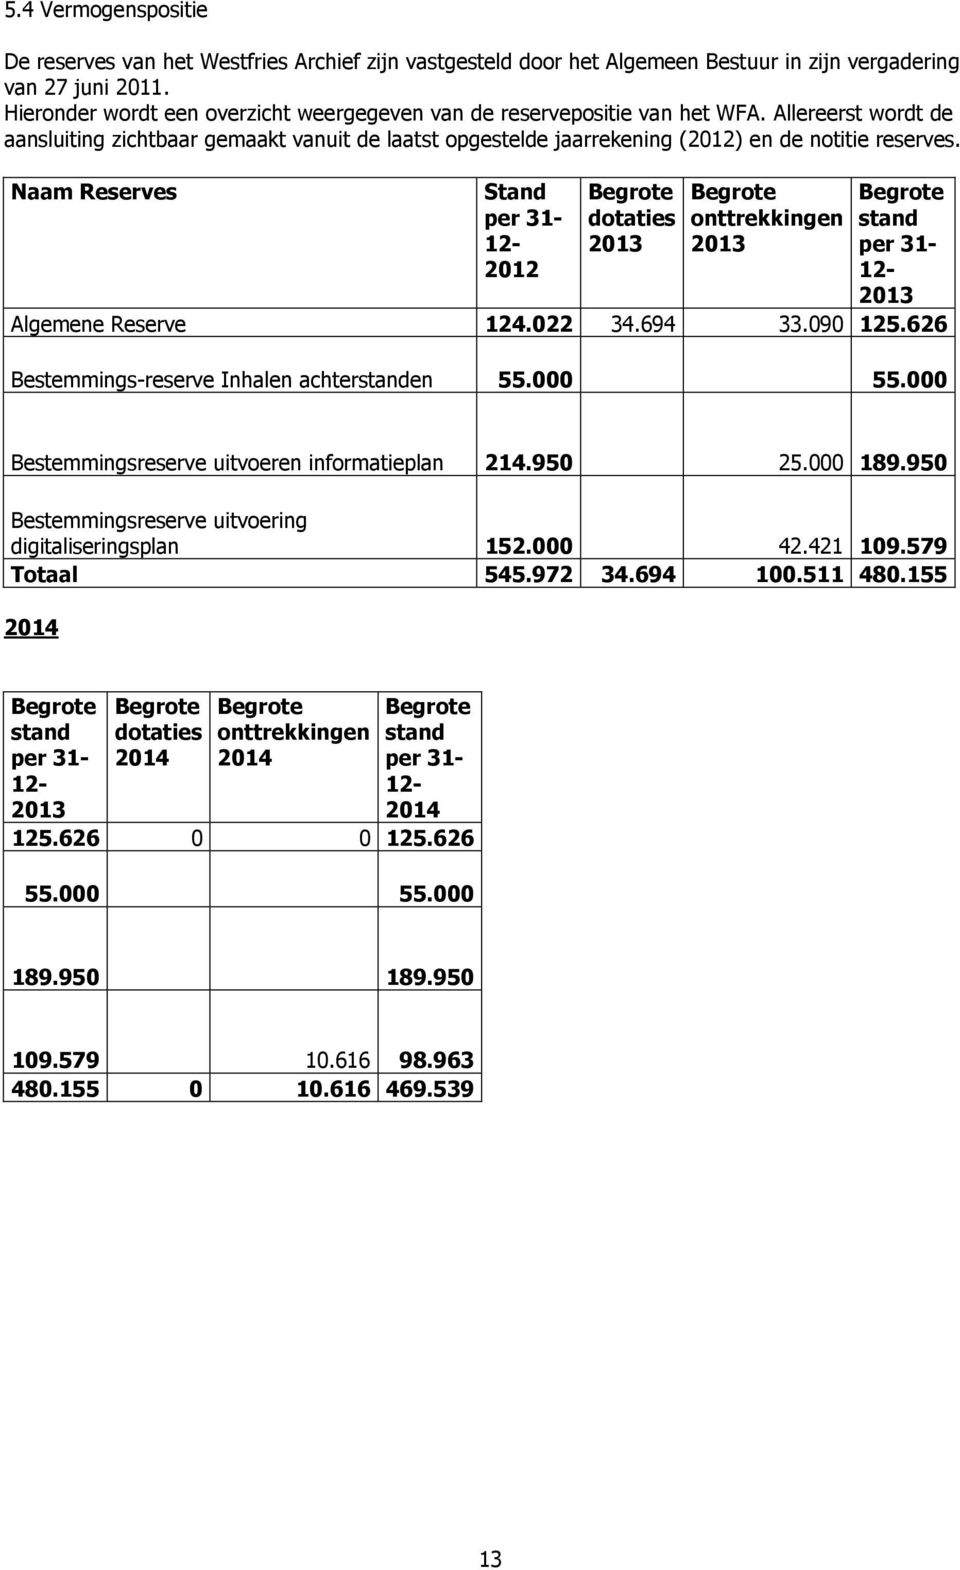 Naam Reserves Stand per 31- dotaties onttrekkingen stand 2012 2013 2013 per 31-2013 Algemene Reserve 124.022 34.694 33.090 125.626 Bestemmings-reserve Inhalen achterstanden 55.000 55.